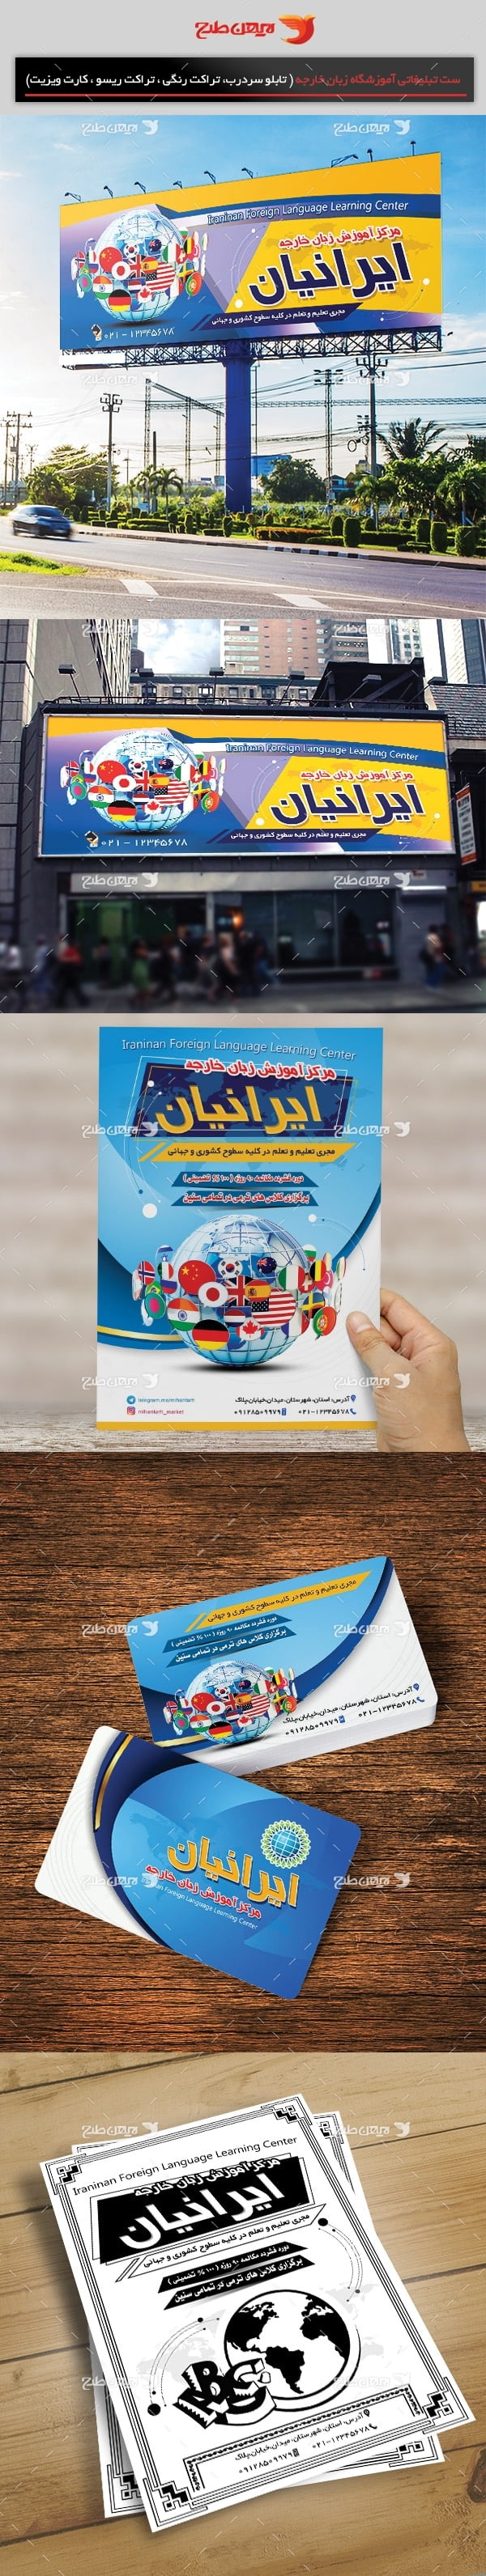 طرح لایه باز ست تبلیغاتی آموزشگاه زبان خارجه(تراکت رنگی، کارت ویزیت، تابلو سردرب ، تراکت ریسو )